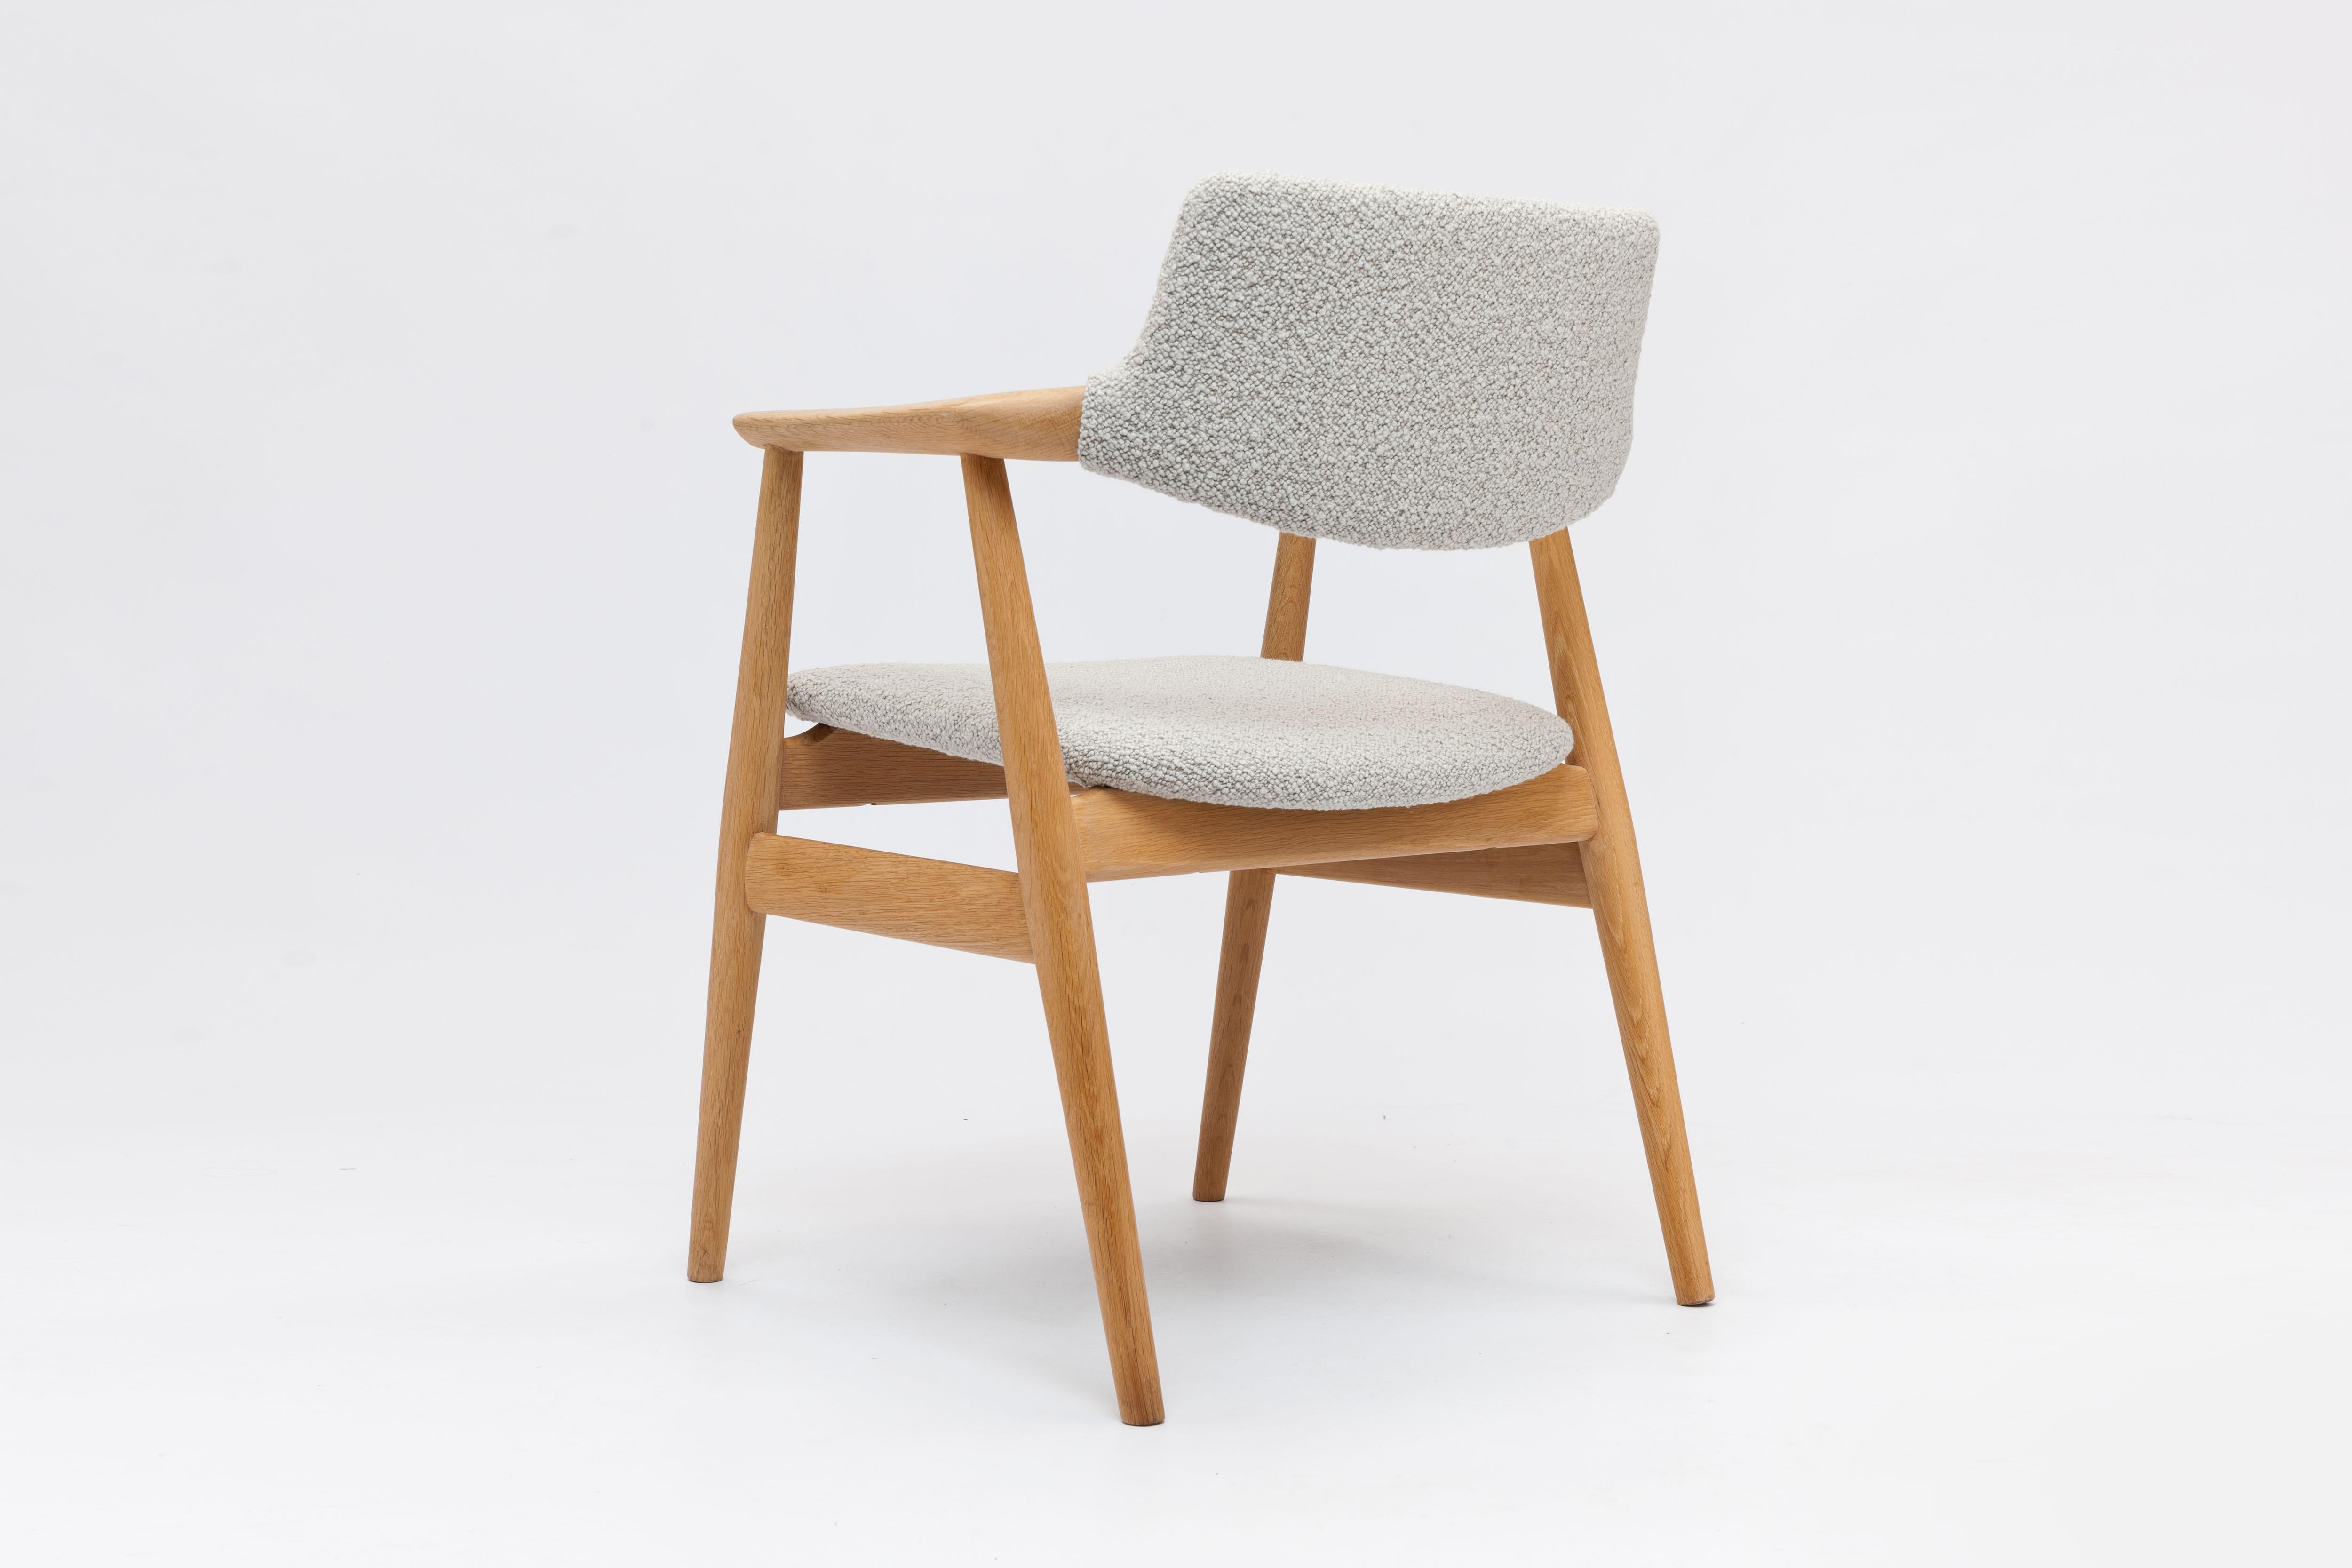 Satz von 4 Armlehnstühlen aus massiver Eiche von dem dänischen Designer Svend Åge Eriksen, entworfen 1962 für die Glostrup Møbelfabrik, Dänemark.

Die schwebende Rückenlehne ist ein markantes und schönes Merkmal dieses zeitlosen Designs aus massivem